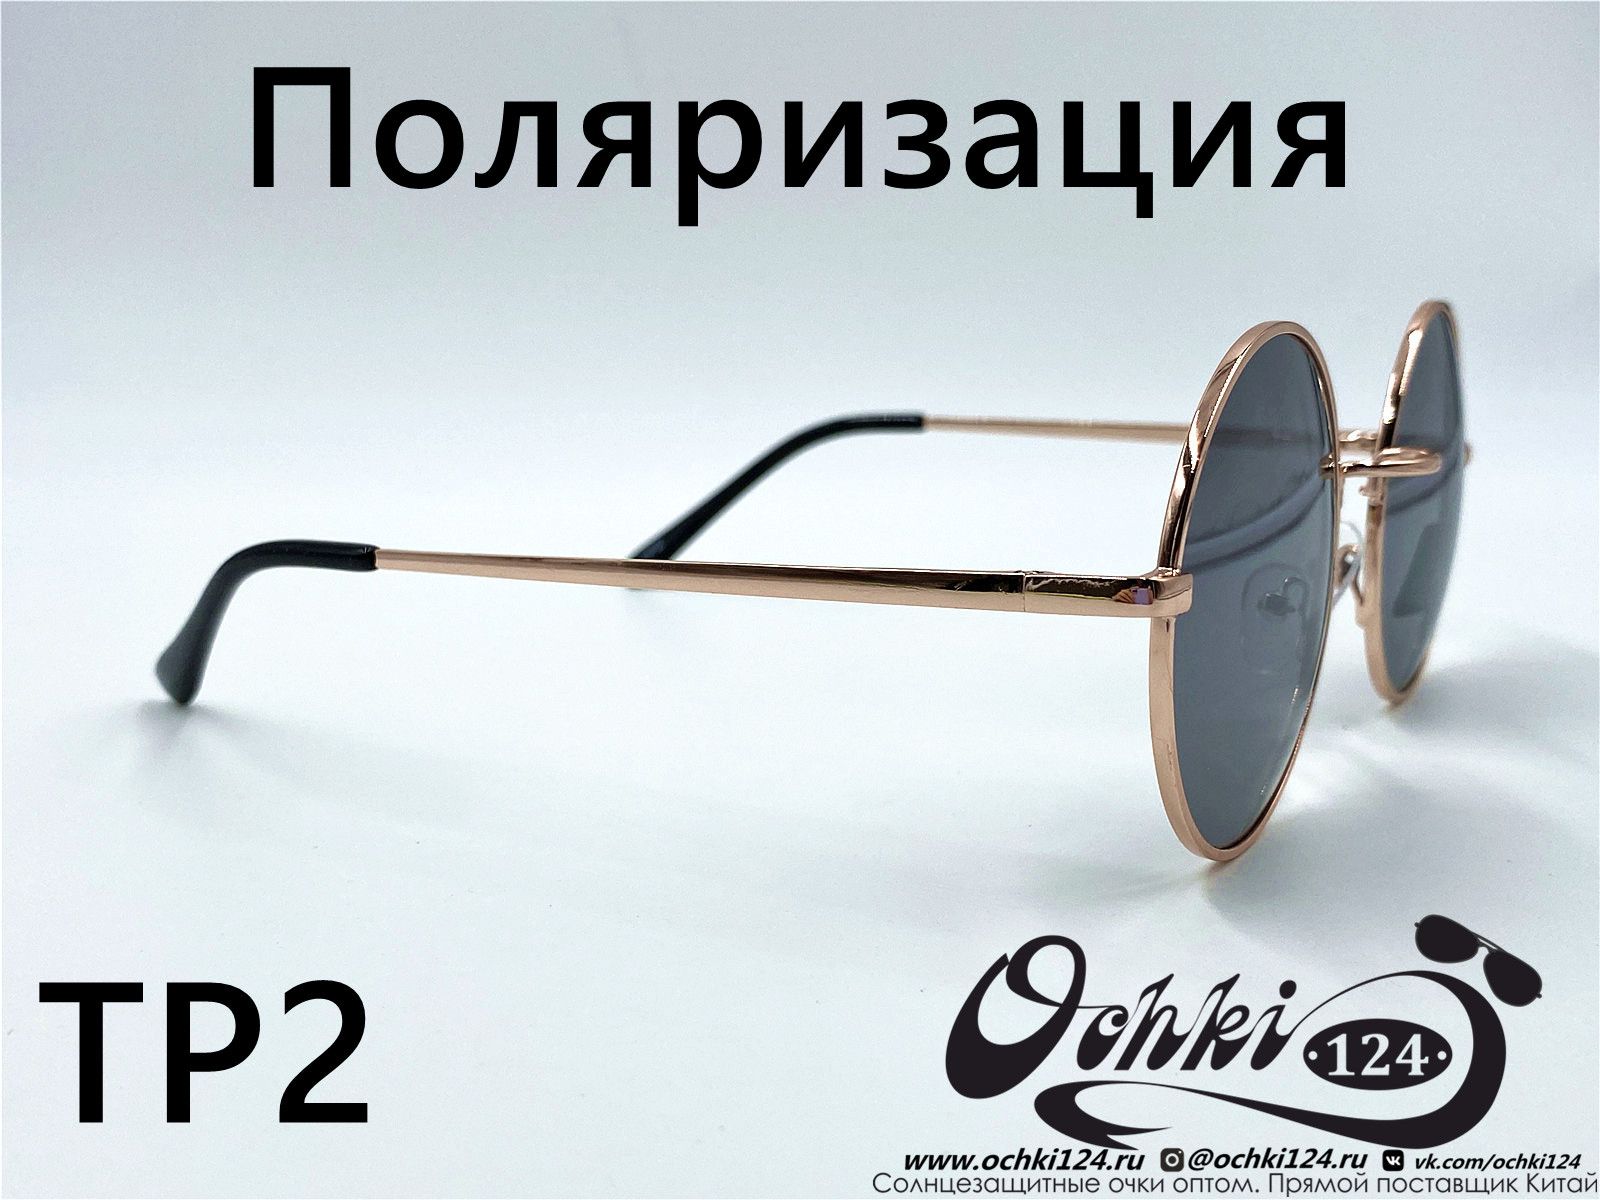  Солнцезащитные очки картинка 2022 Мужские Поляризованные Круглые KaiFeng TP2-3 